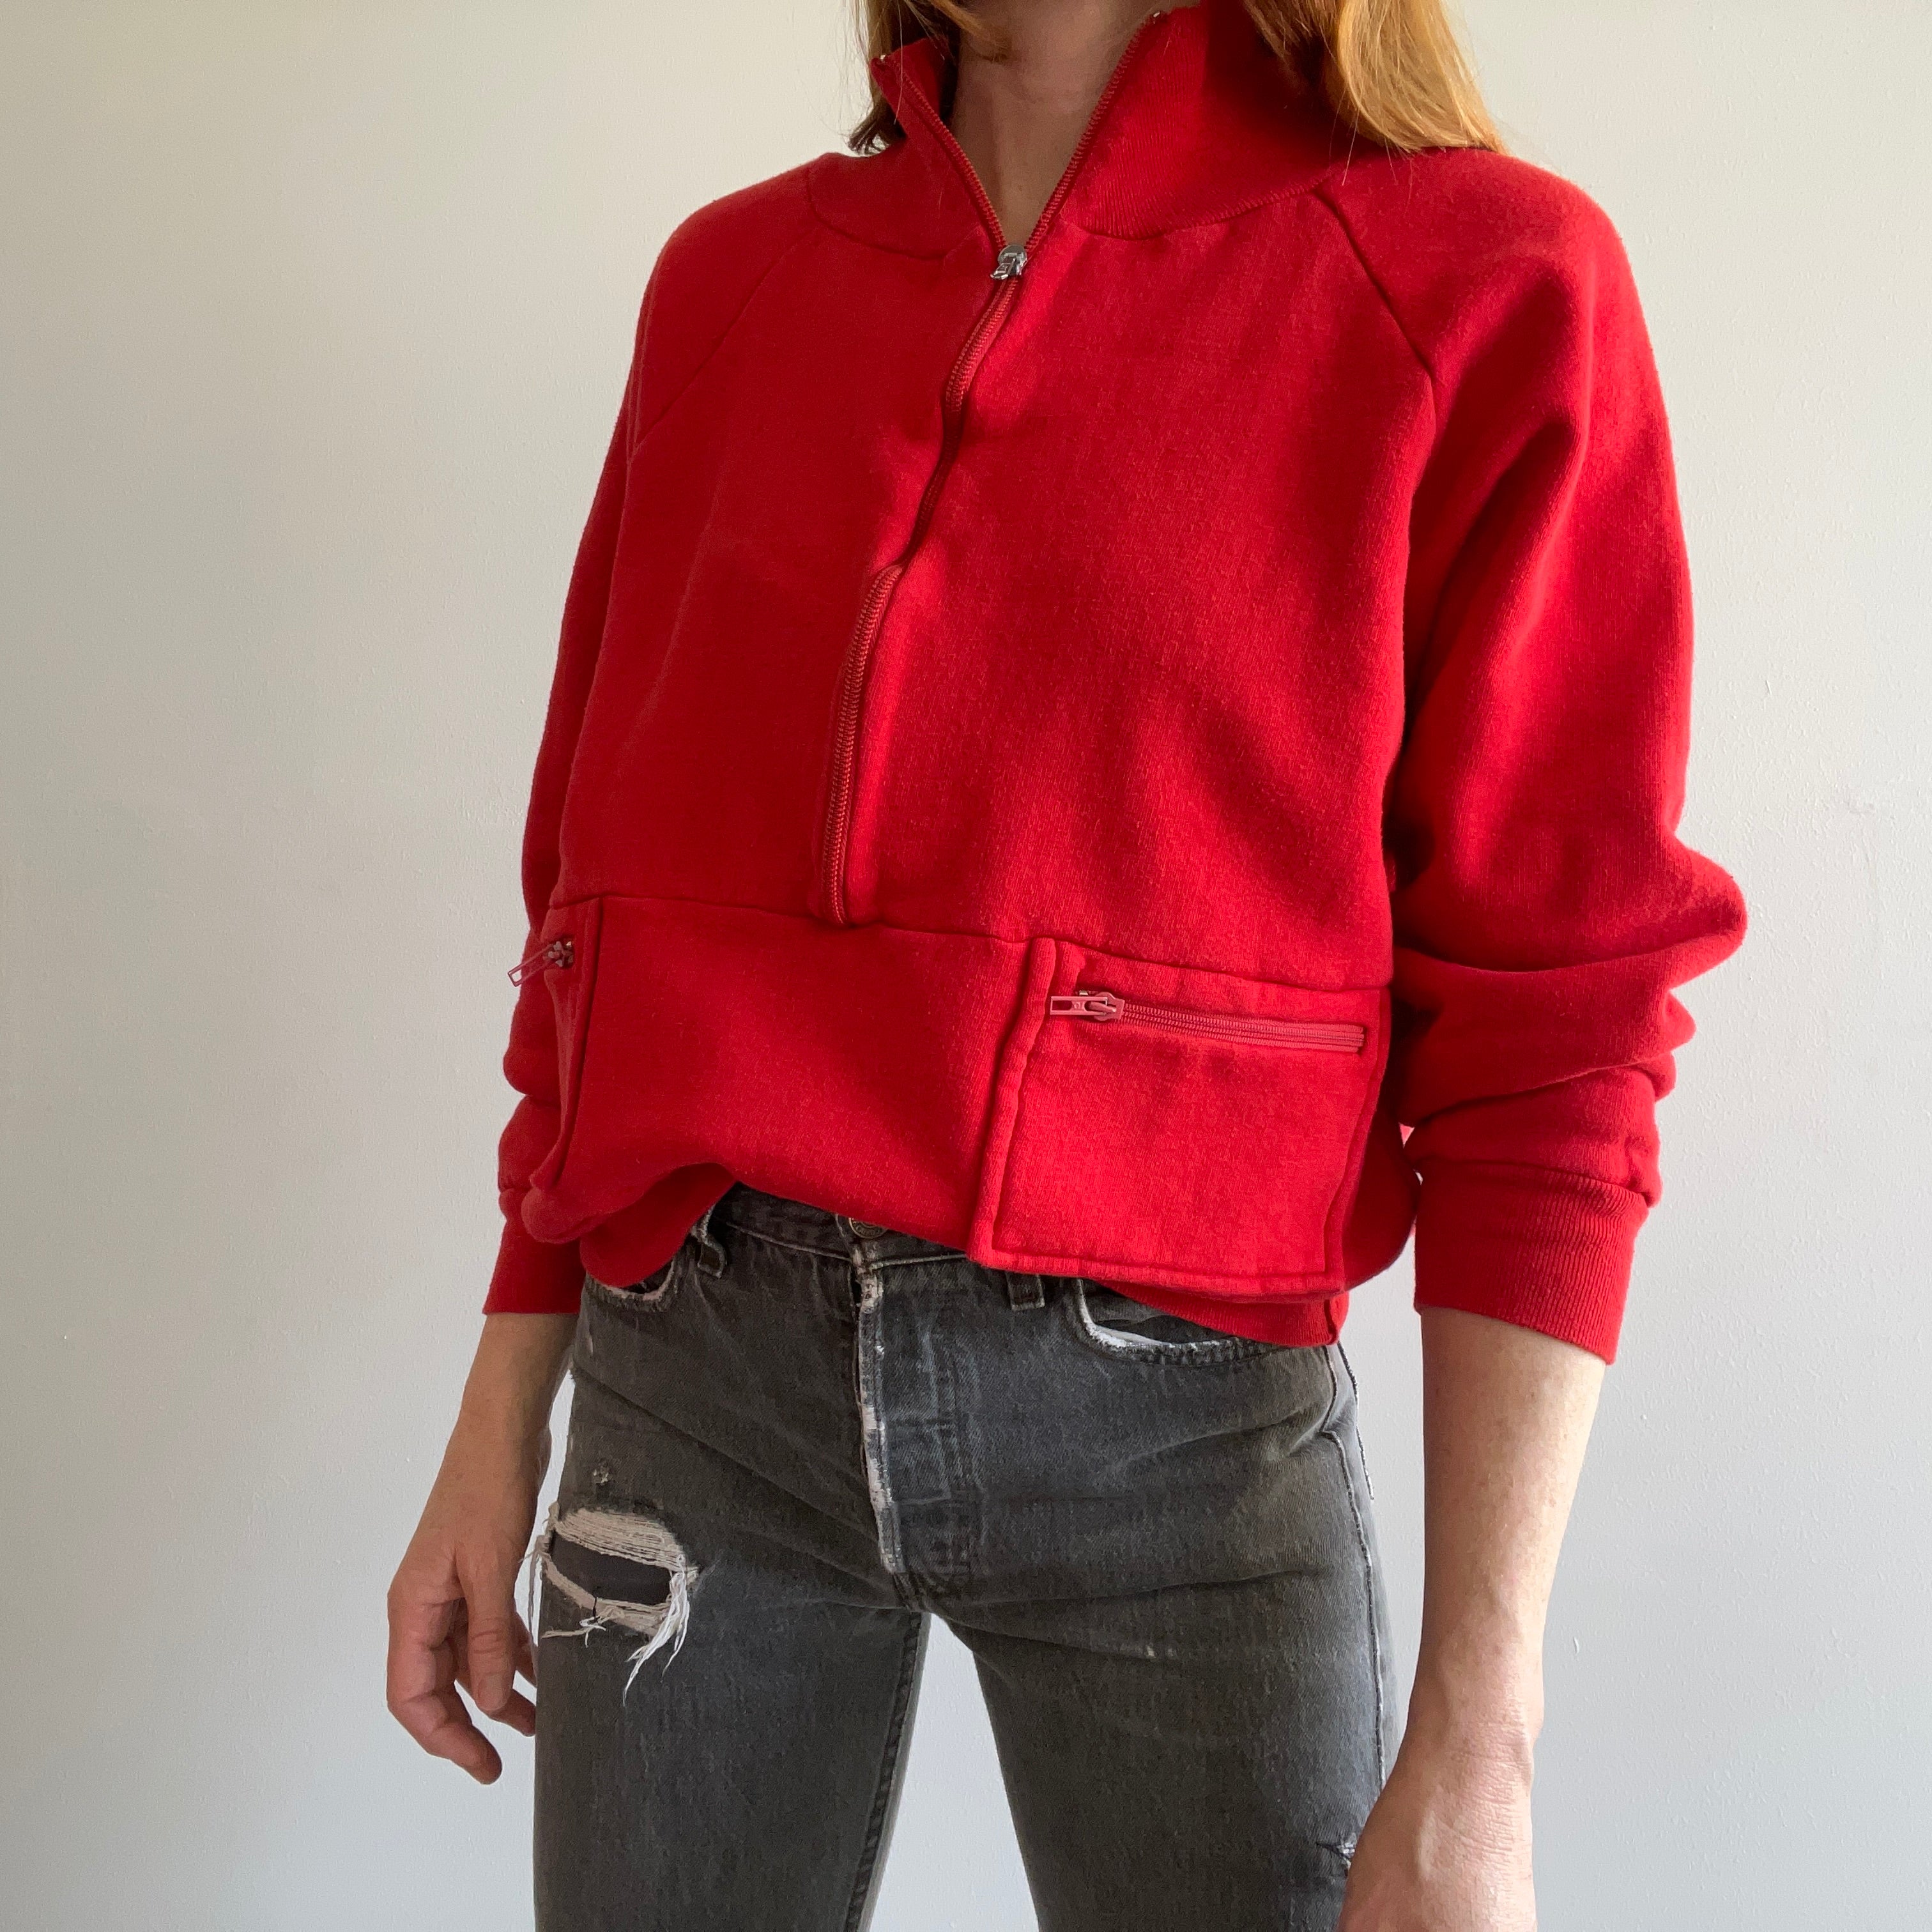 1970s Rad et Insolite Cut Red Quarter Zip Sweat-shirt avec poches !! par VanCort